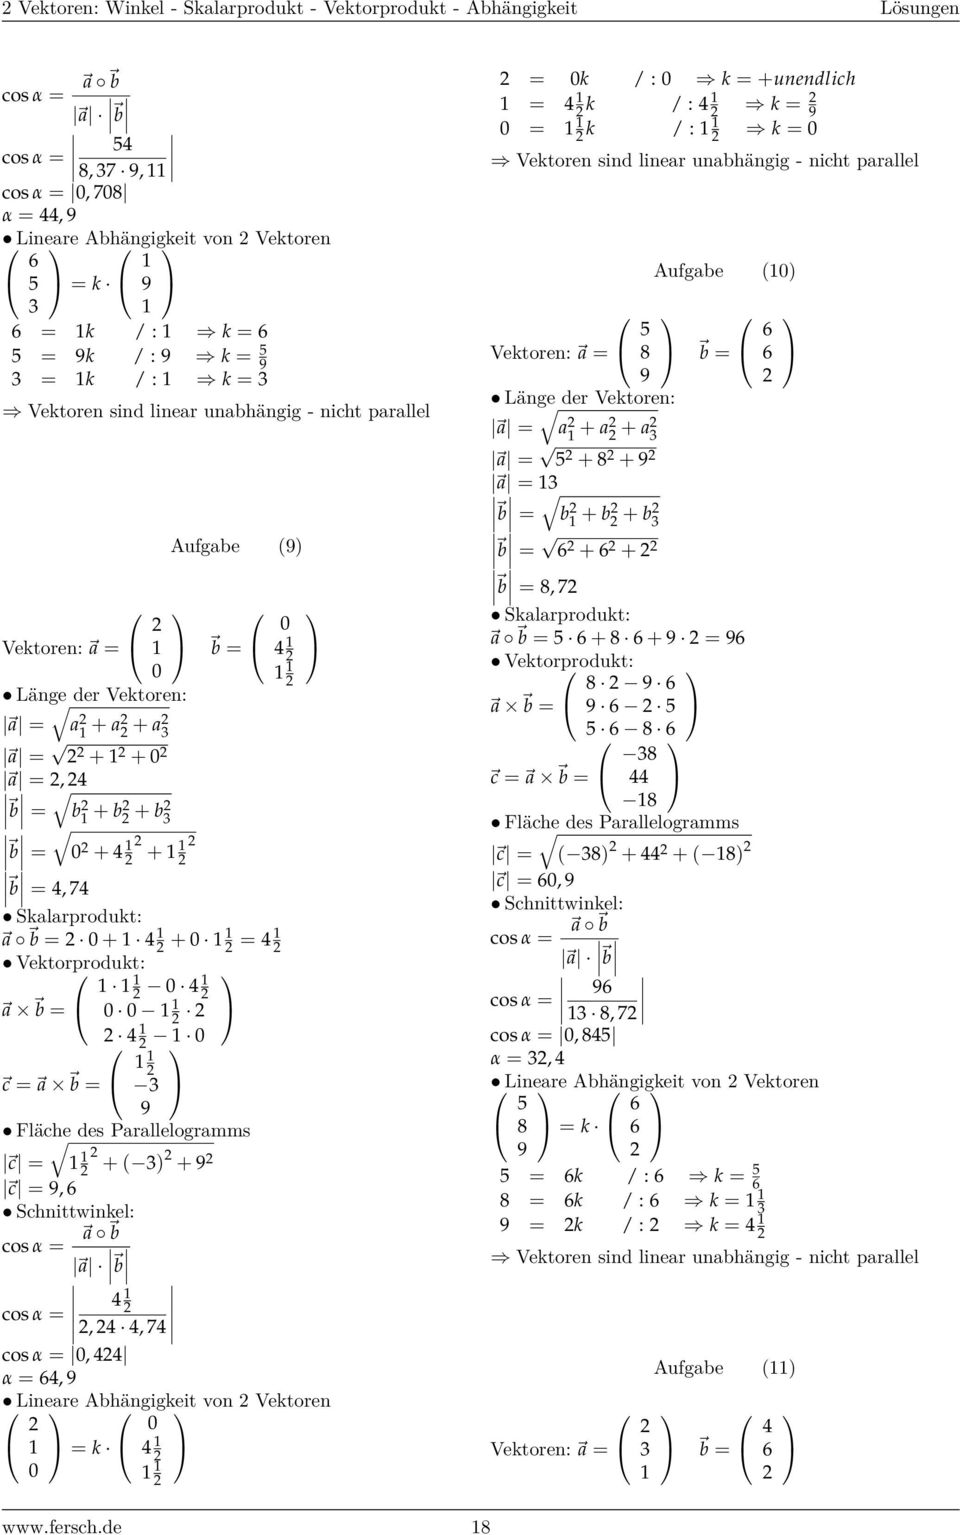 Vektorprodukt: a b = c = a b = 9 Fläche des Parallelogramms c = + ( ) + 9 c = 9, 6 Schnittwinkel: cos α = a b a b cos α =,, 7 cos α =, α = 6, 9 Lineare Abhängigkeit von Vektoren = k = k / : k =